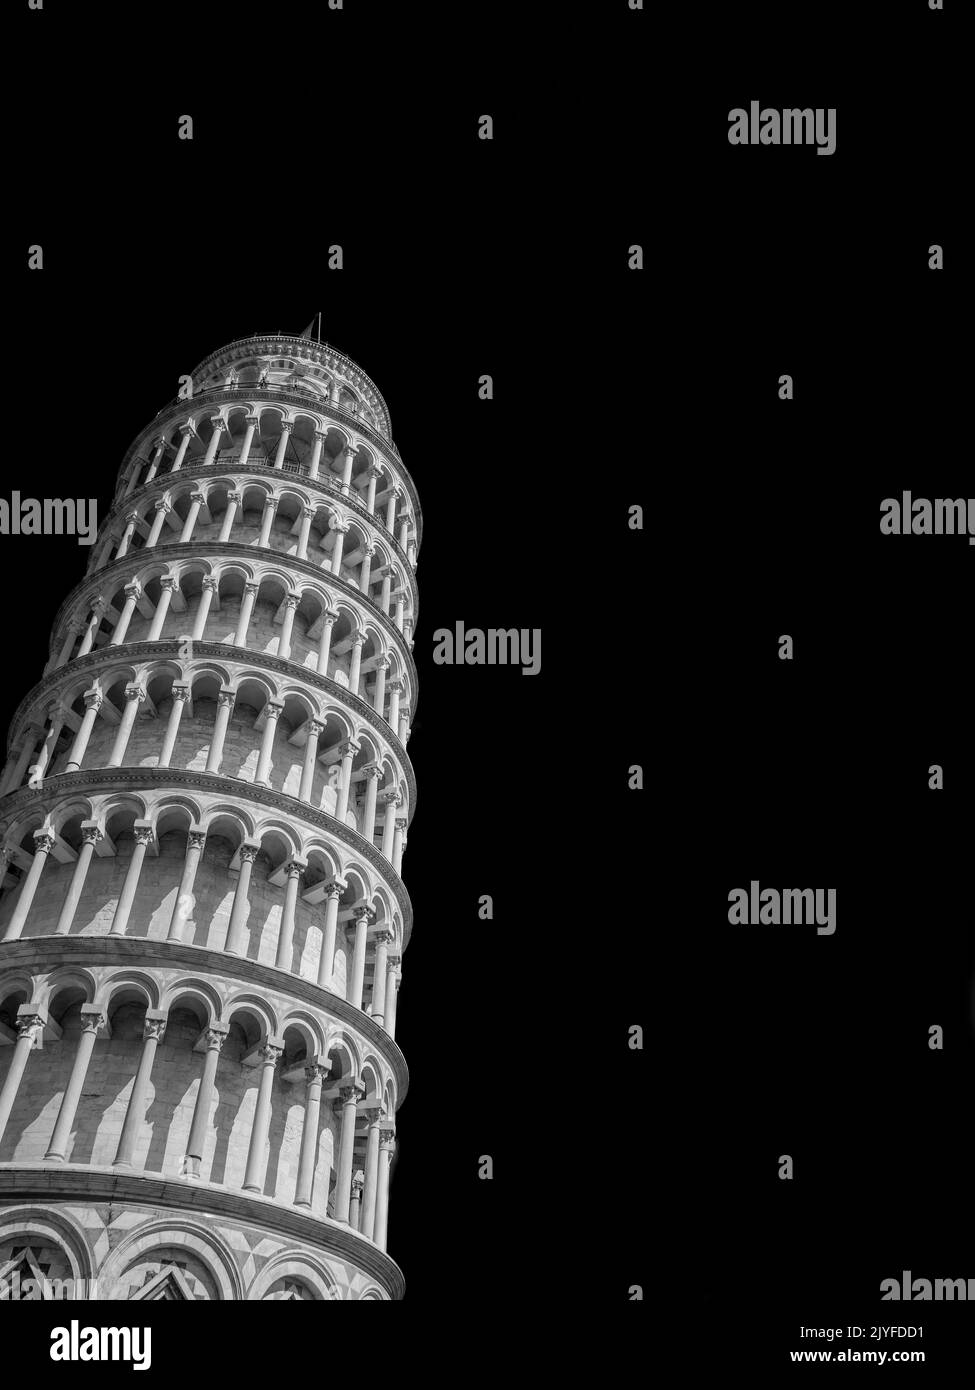 L'emblématique Tour penchée de Pise, l'un des plus célèbres bâtiments anciens du monde, vu d'en dessous (noir et blanc avec espace copie) Banque D'Images